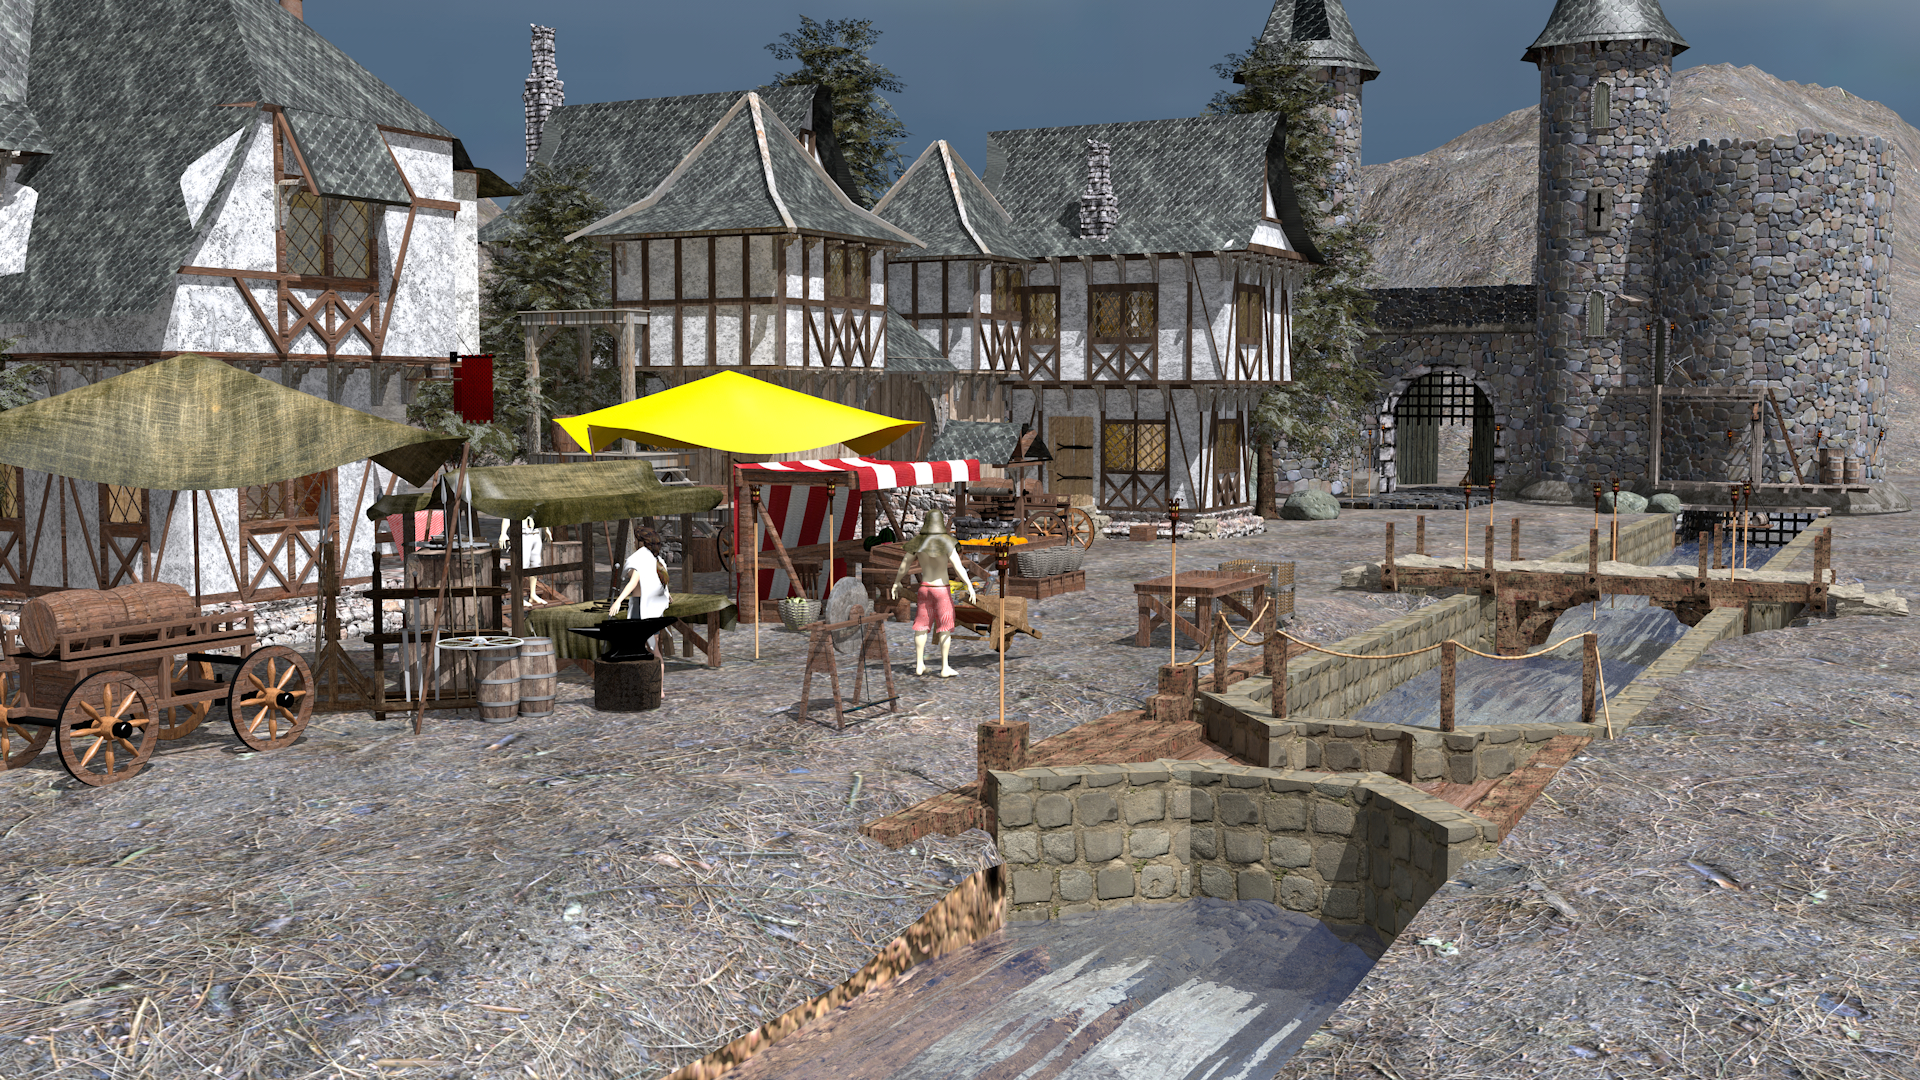 Medieval village em Cinema 4d maxwell render imagem